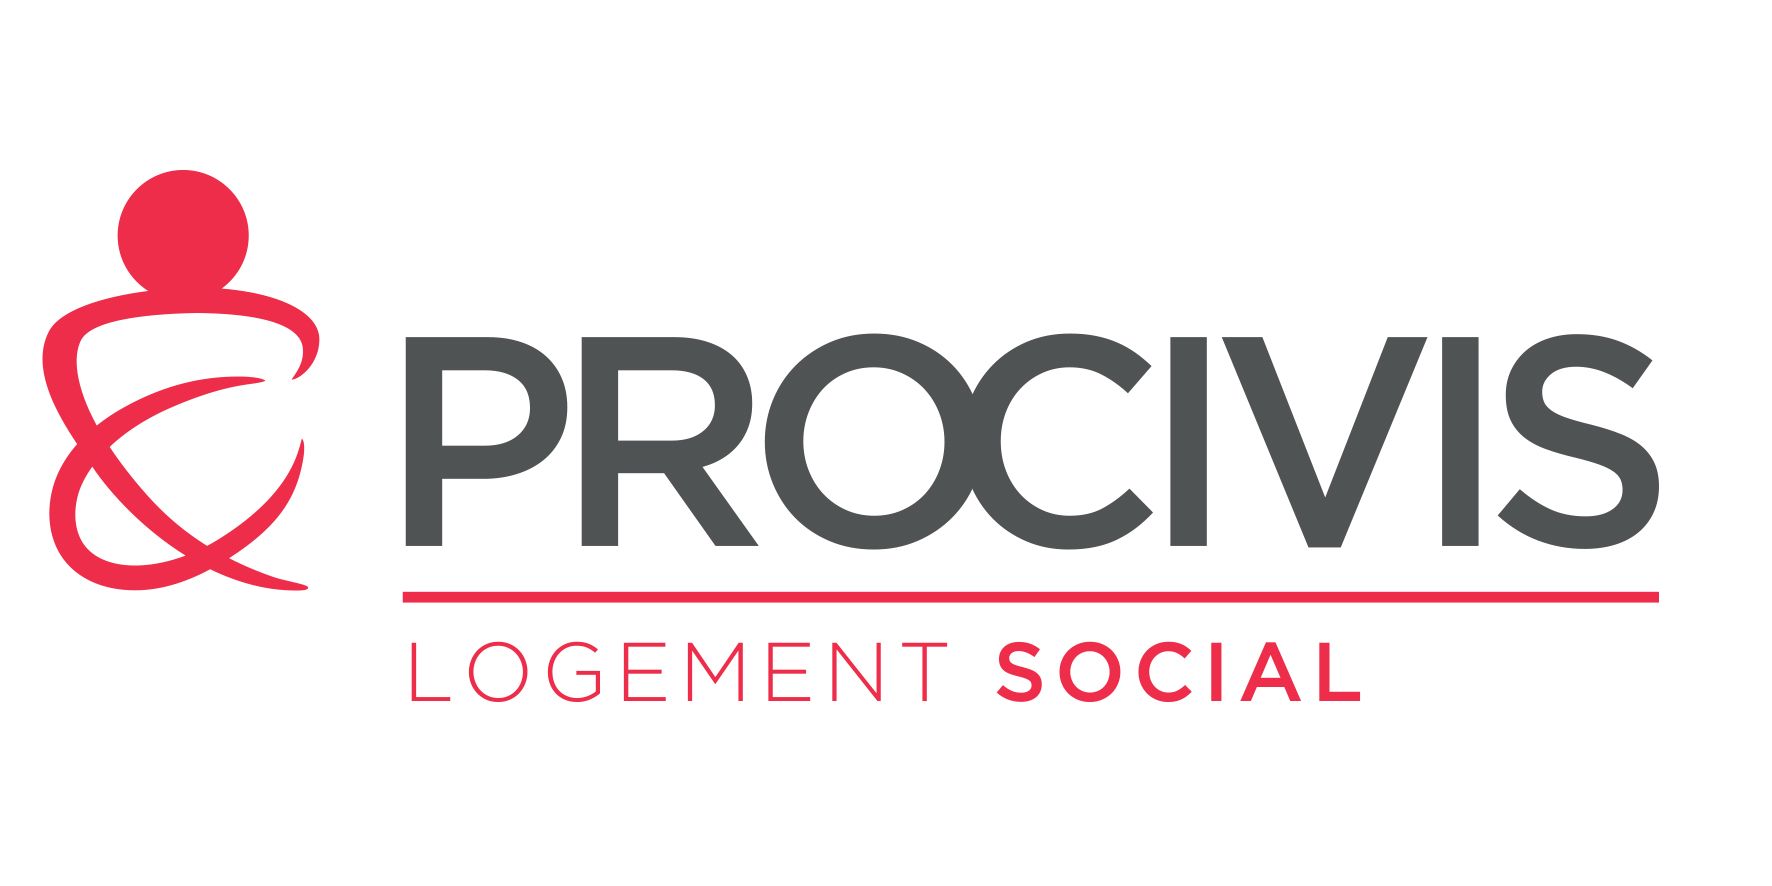 logo-procivis-logement-social-h